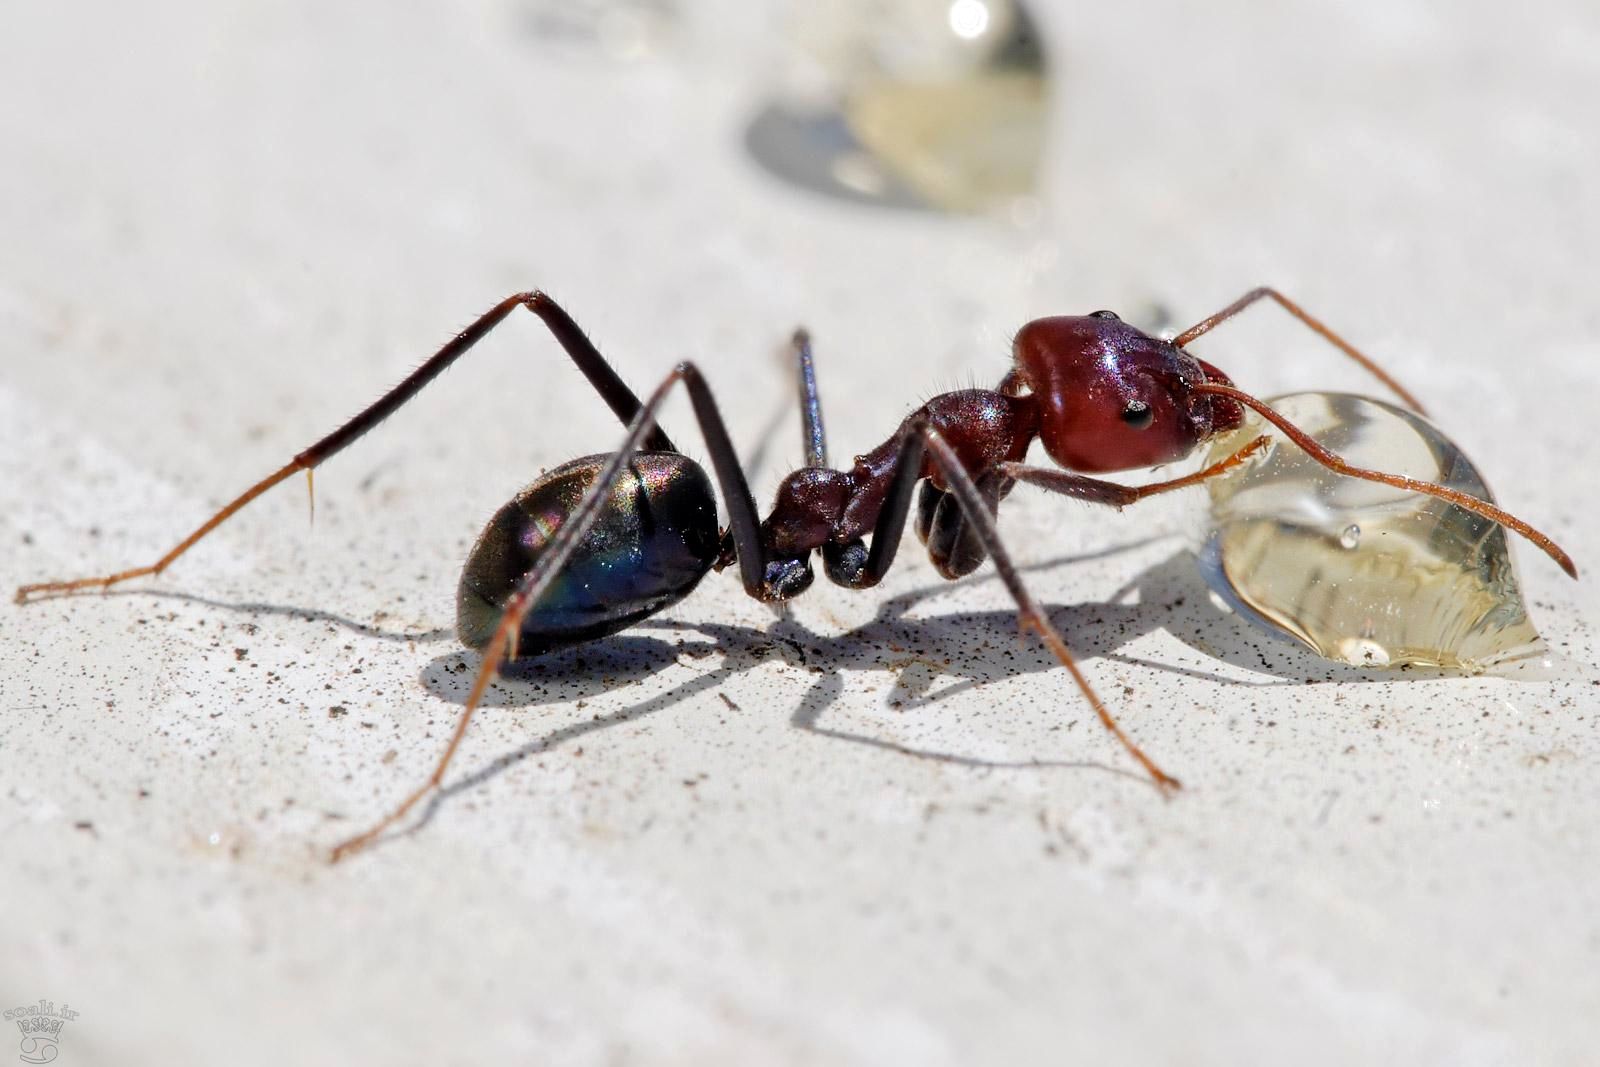 روغن مورچه برای نوزاد | روغن مورچه اصل | روغن مورچه روجا | روغن مورچه طلا | روغن مورچه برای چی خوبه | روغن مورچه برای چیست | روغن مورچه چیست